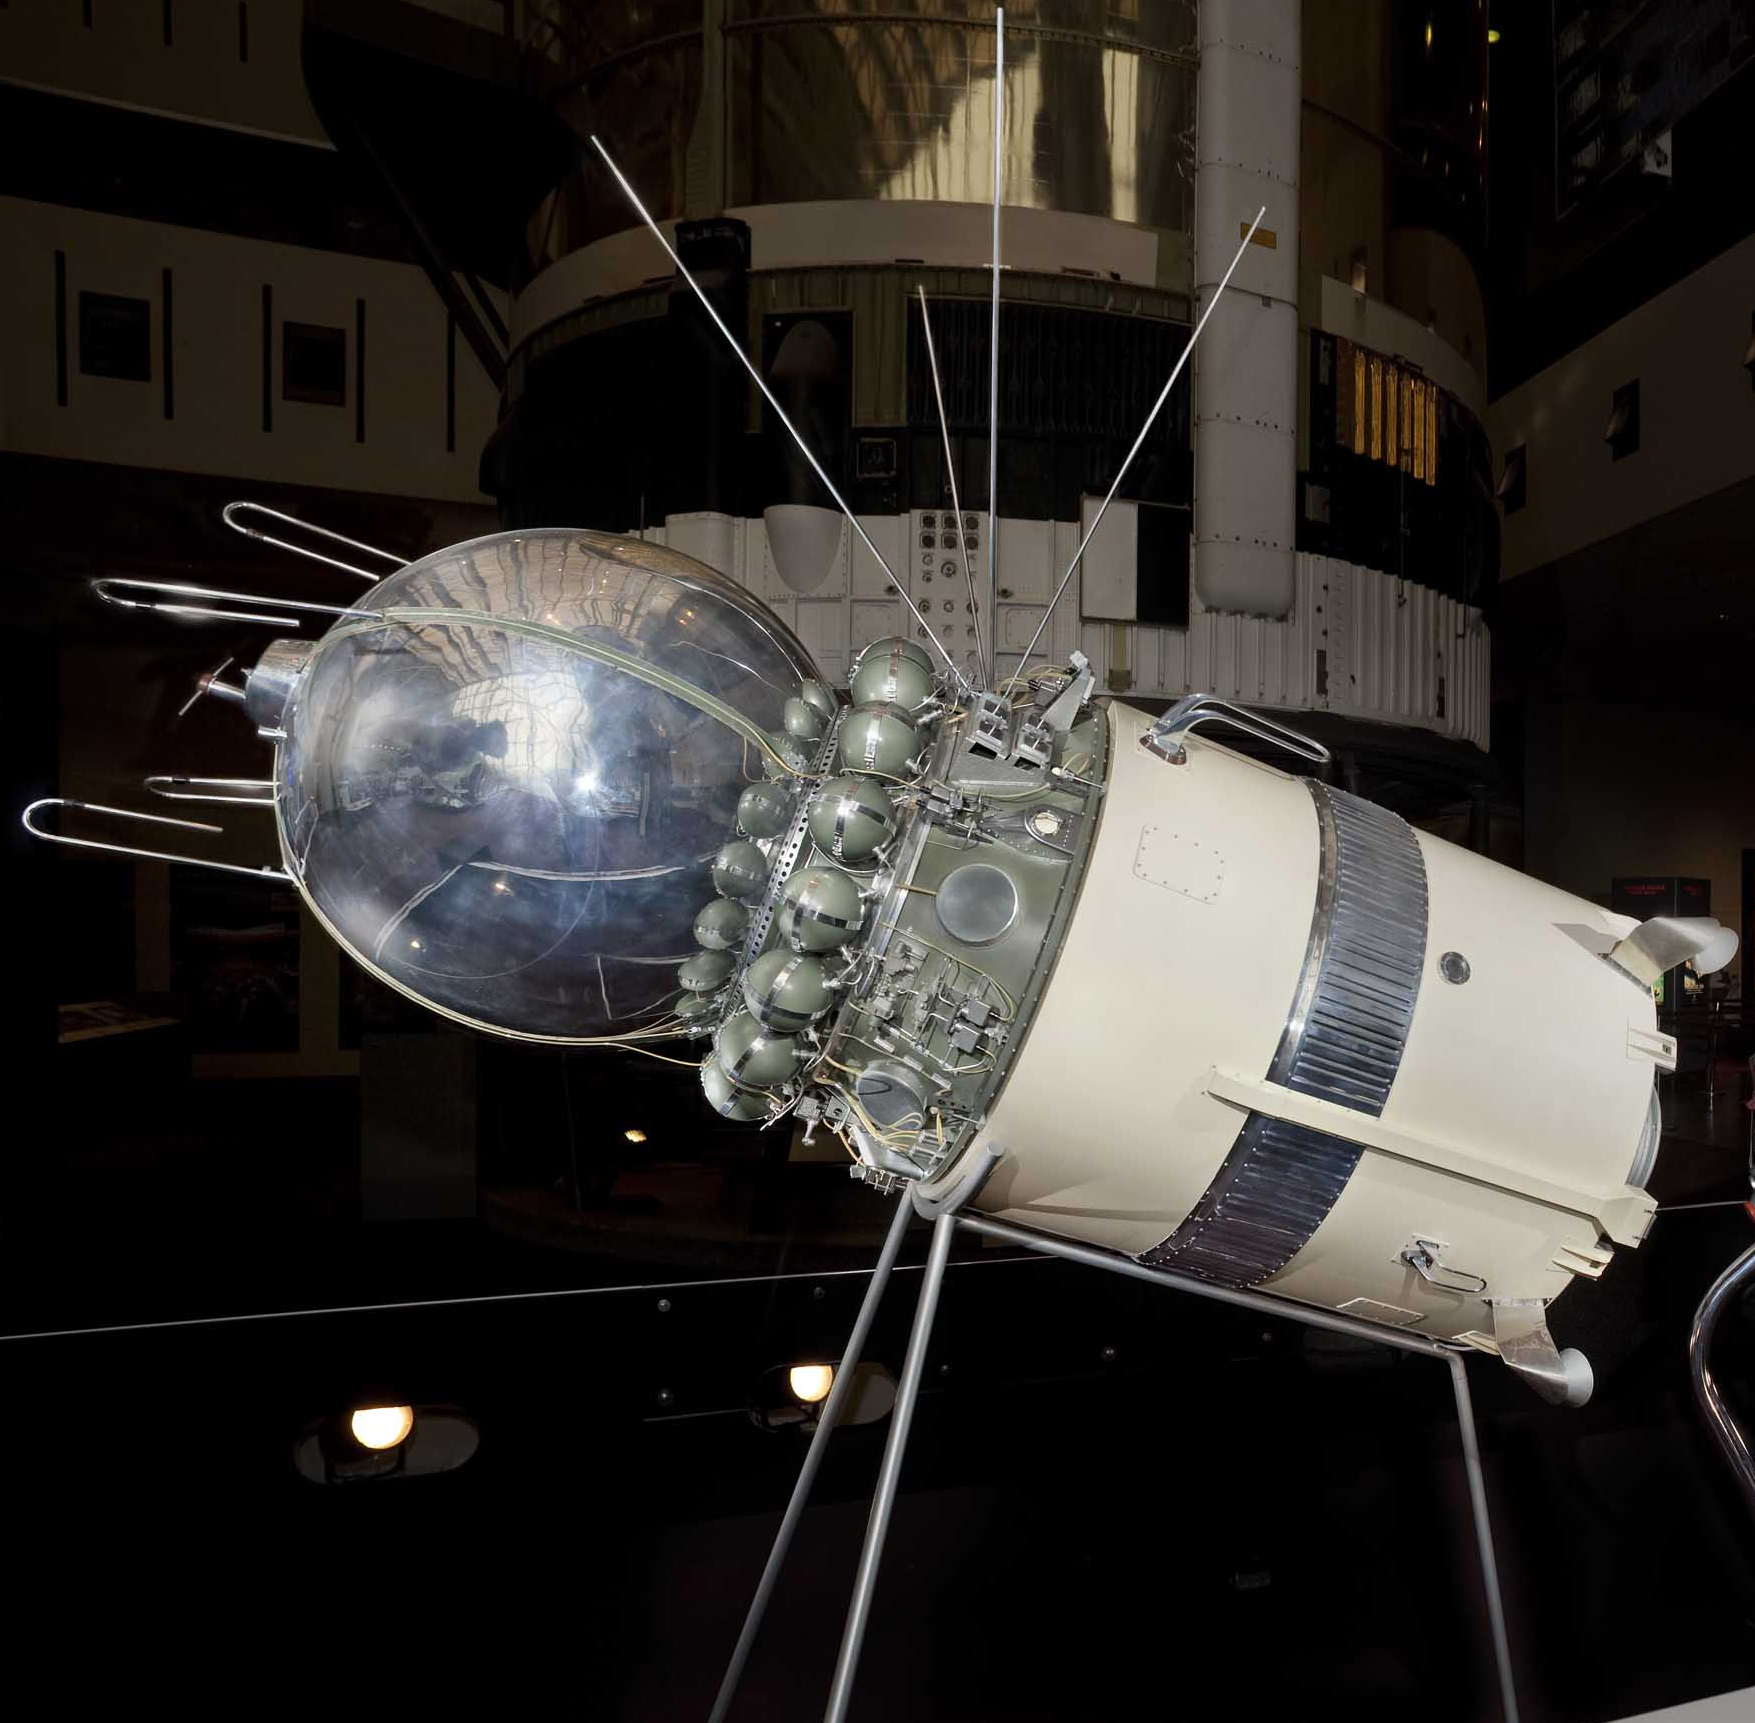 Первый космический корабль вышедший в космос. Первый пилотируемый космический корабль Восток. Космический аппарат Гагарина Восток-1. Корабль Спутник Восток 1. Космический корабль Восток 1961.